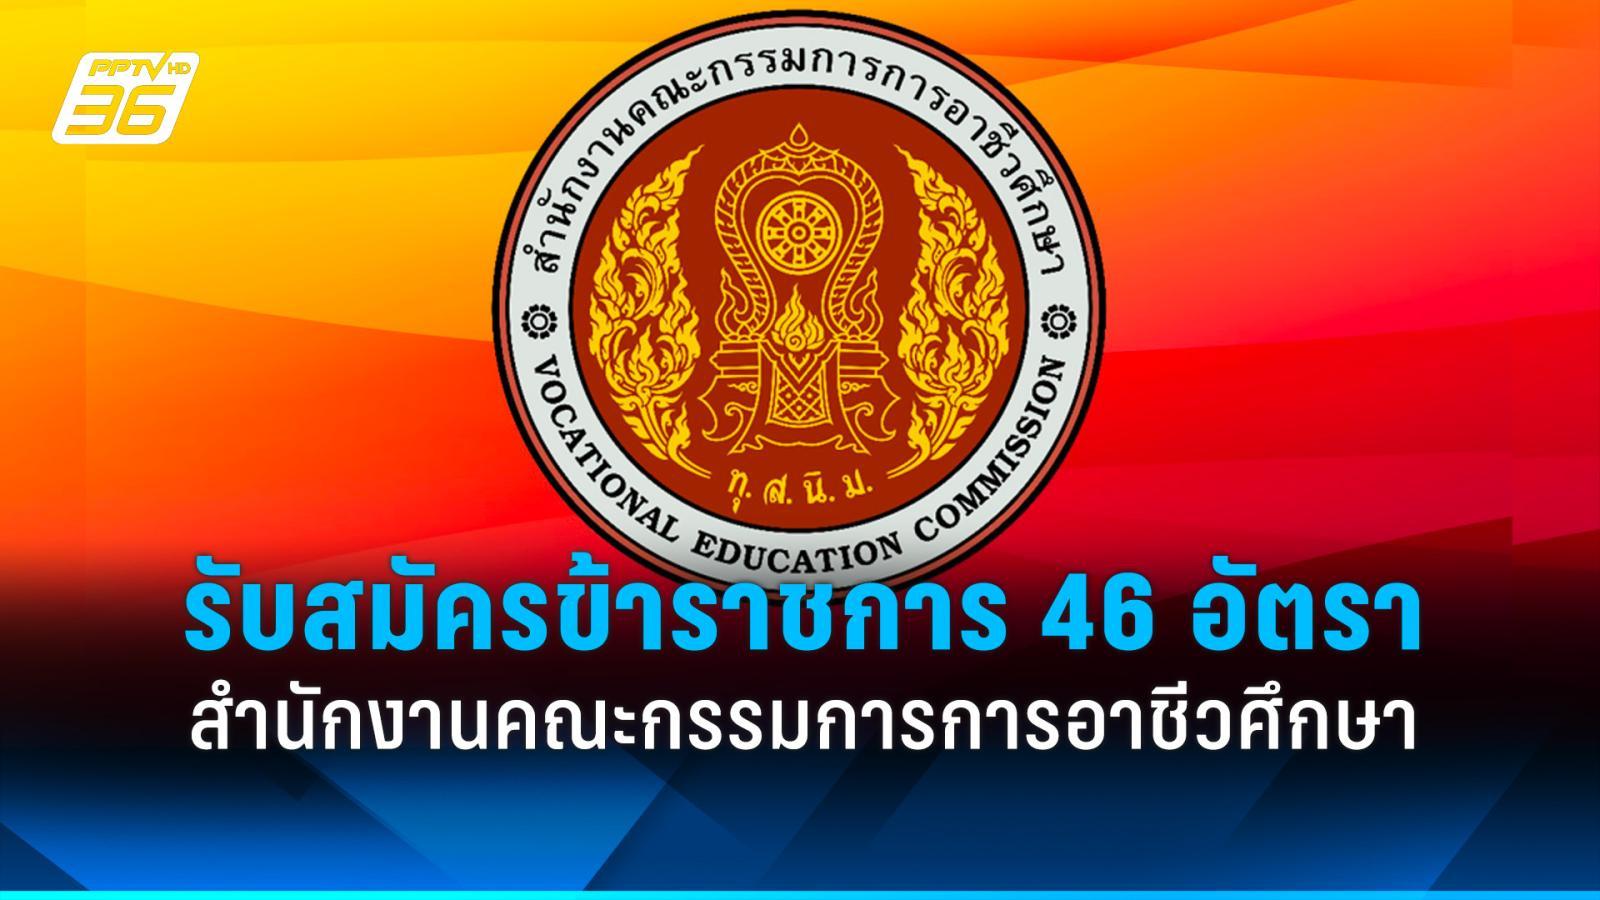 สำนักงานคณะกรรมการการอาชีวศึกษา รับสมัครข้าราชการ 46 อัตรา ถึง 16 พ.ค. 67